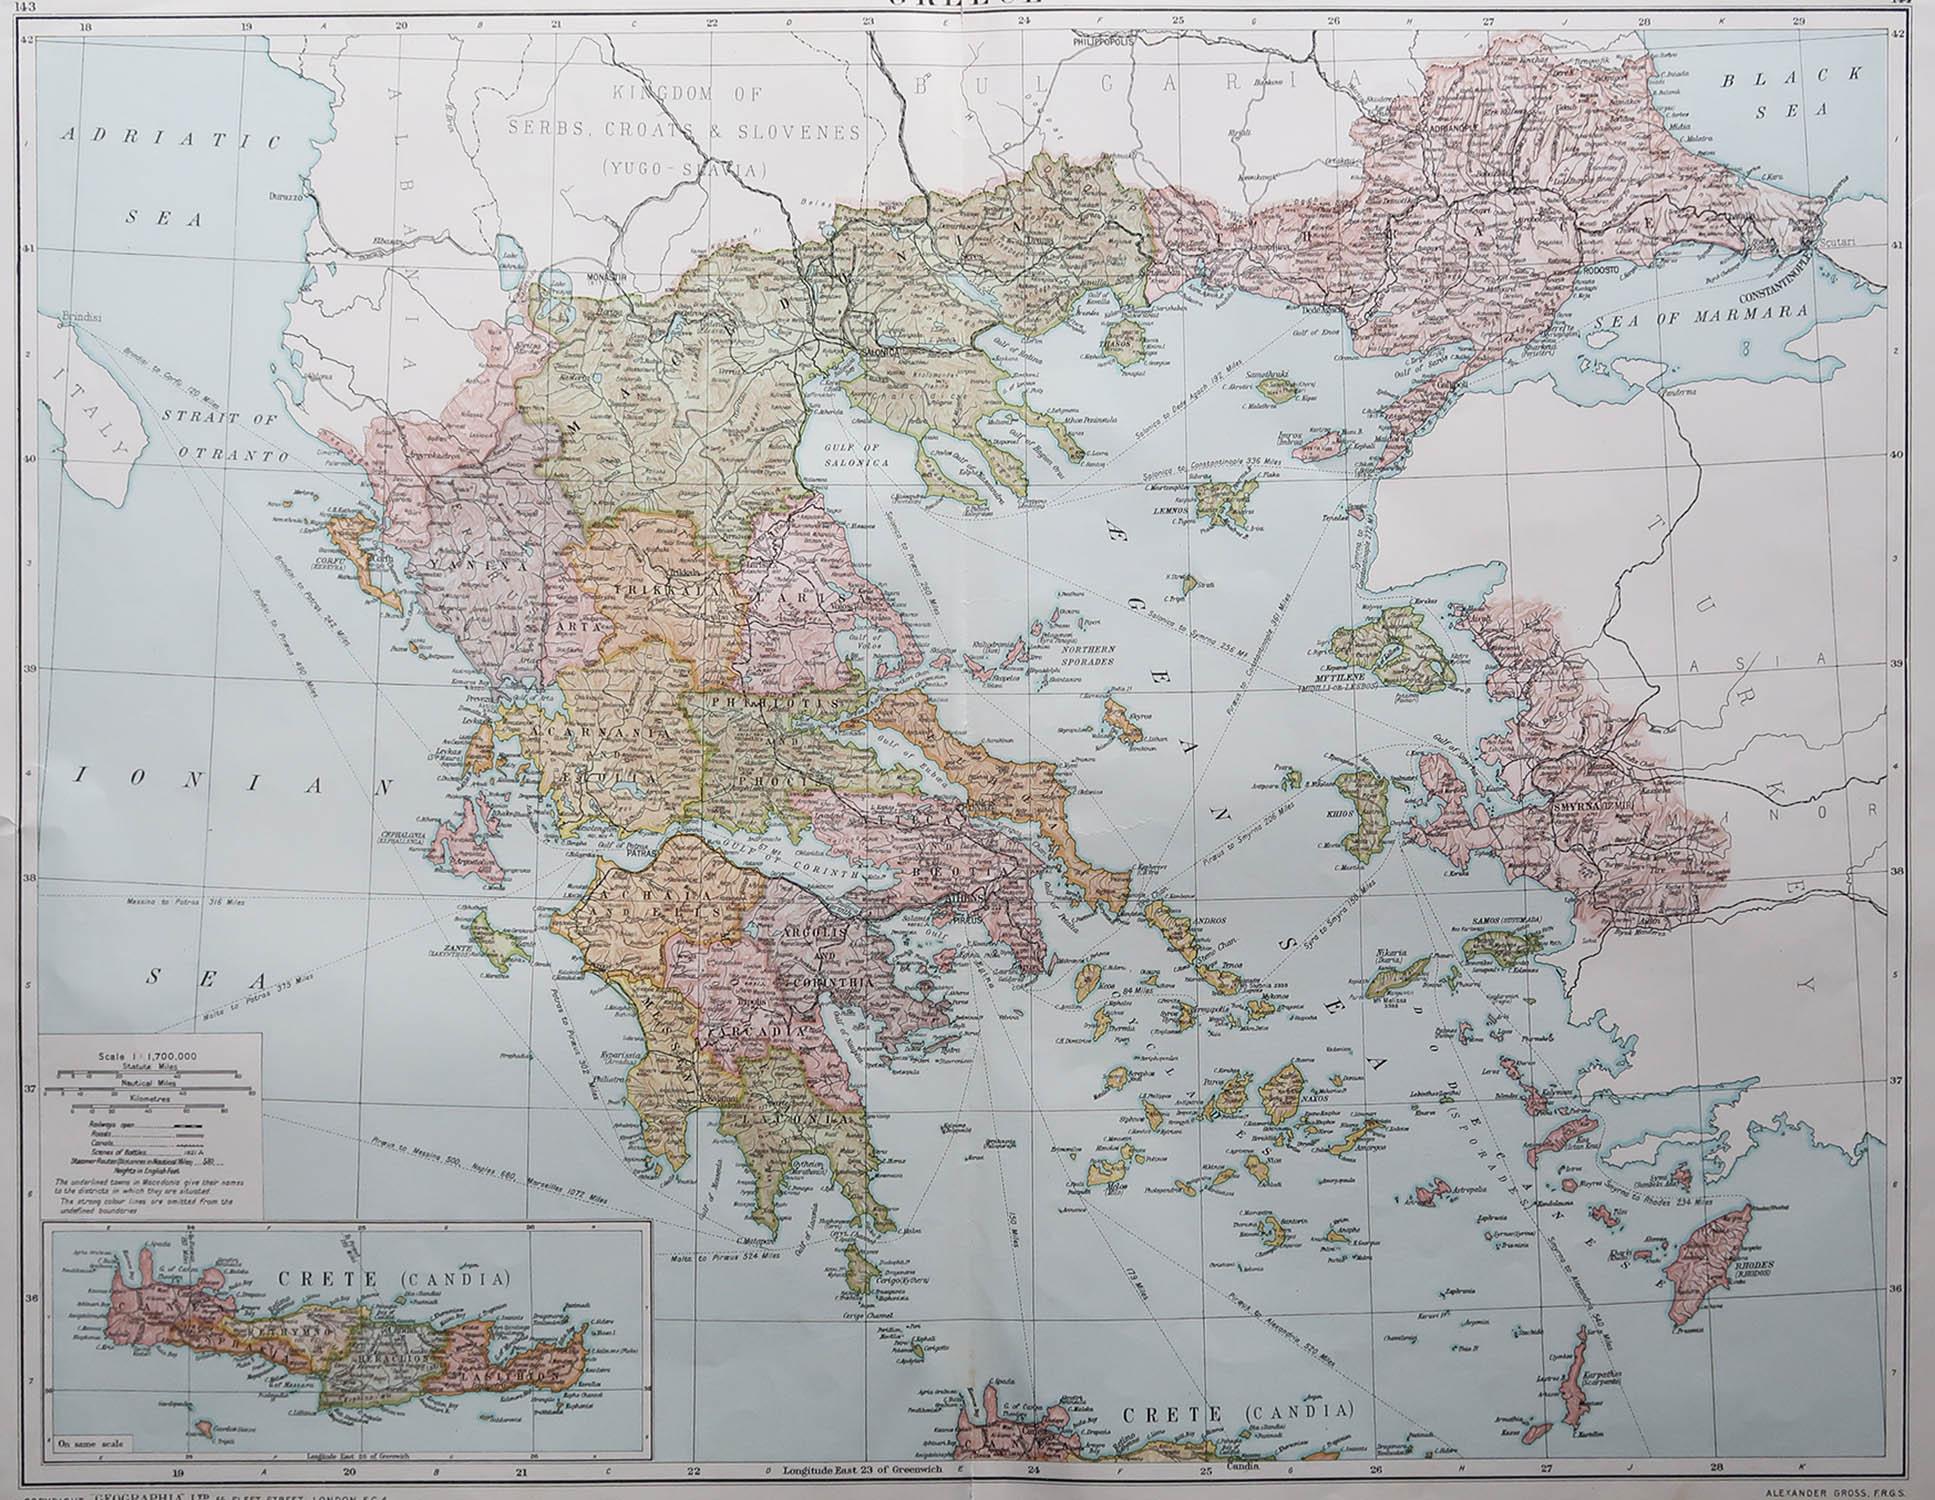 Große Karte von Griechenland

Originalfarbe.

Guter Zustand 

Herausgegeben von Alexander Gross

Ungerahmt.








